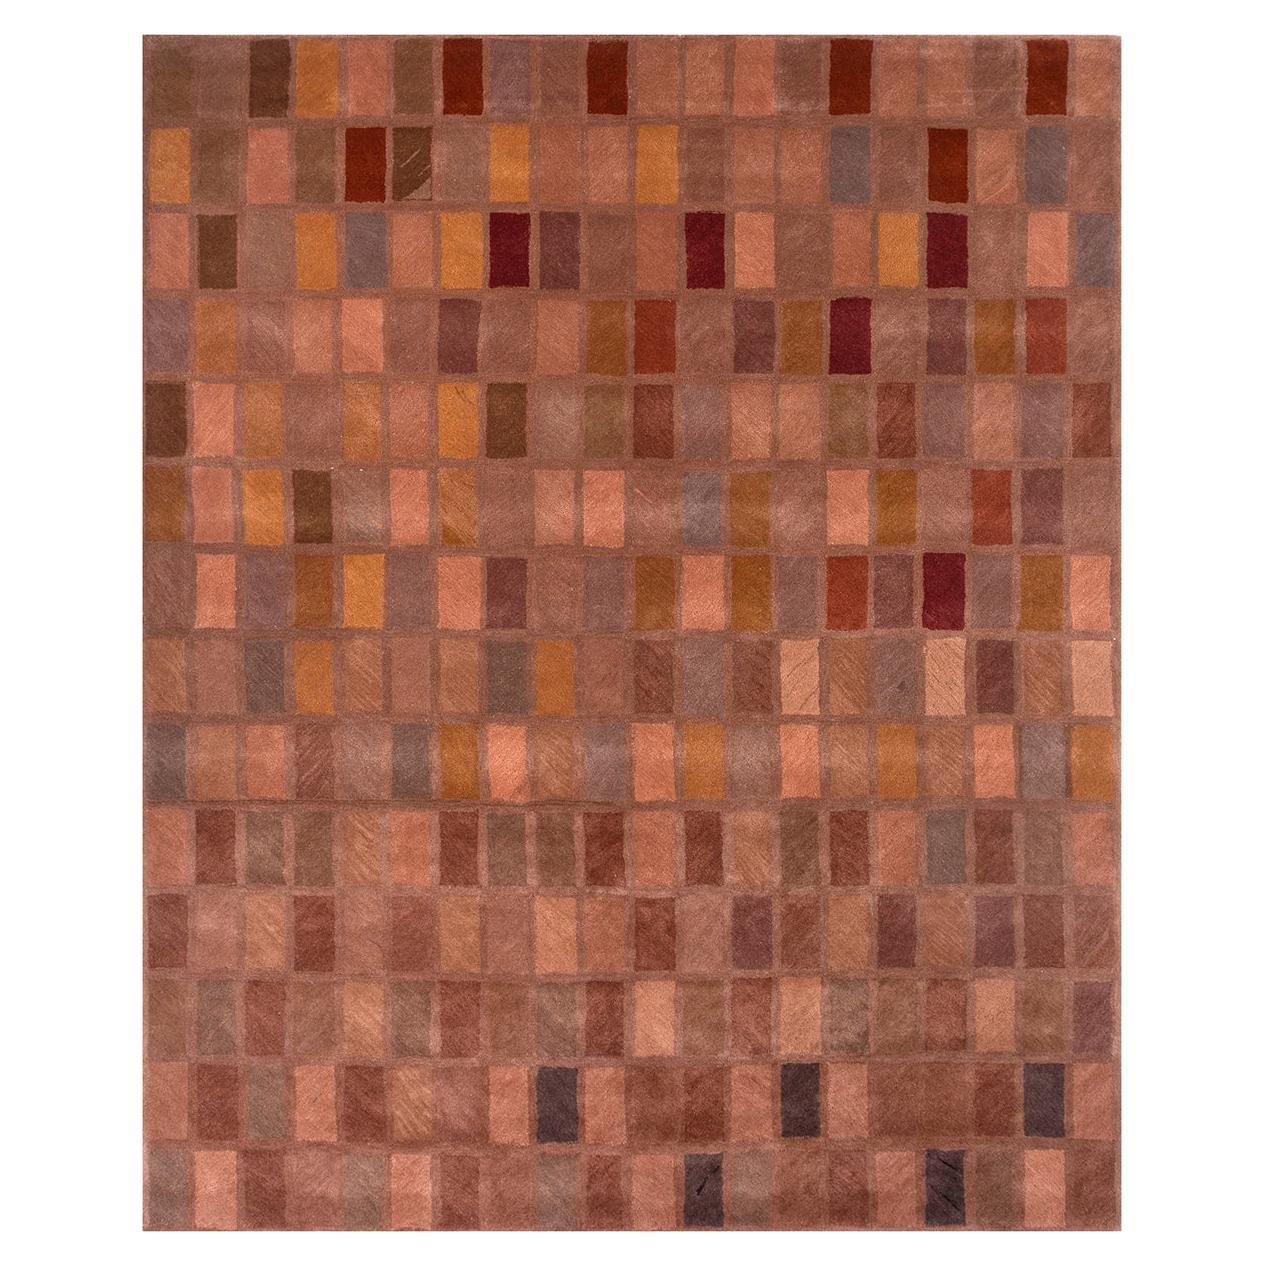 Tapis Caramel de tisserands rurals, touffeté, laine, viscose, 240 x 300 cm